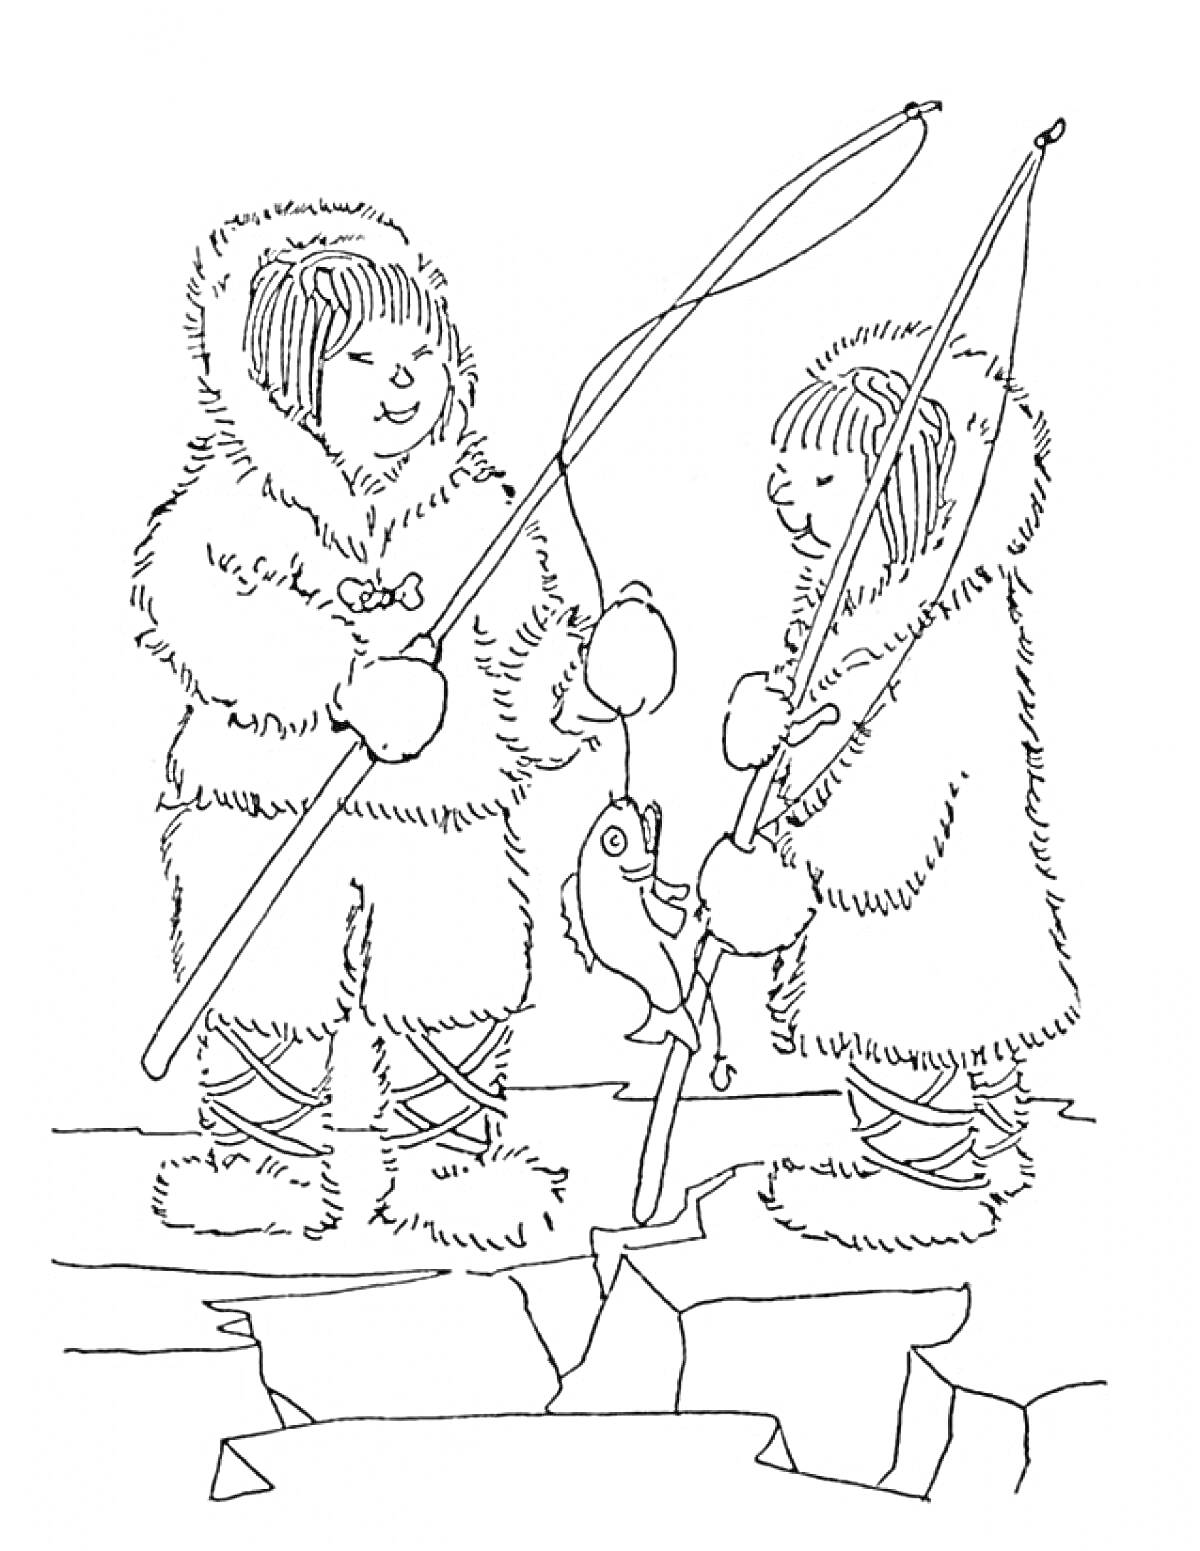 Раскраска Эскимосы, рыбалка на льду, удочки, пойманная рыба, дети в зимней одежде